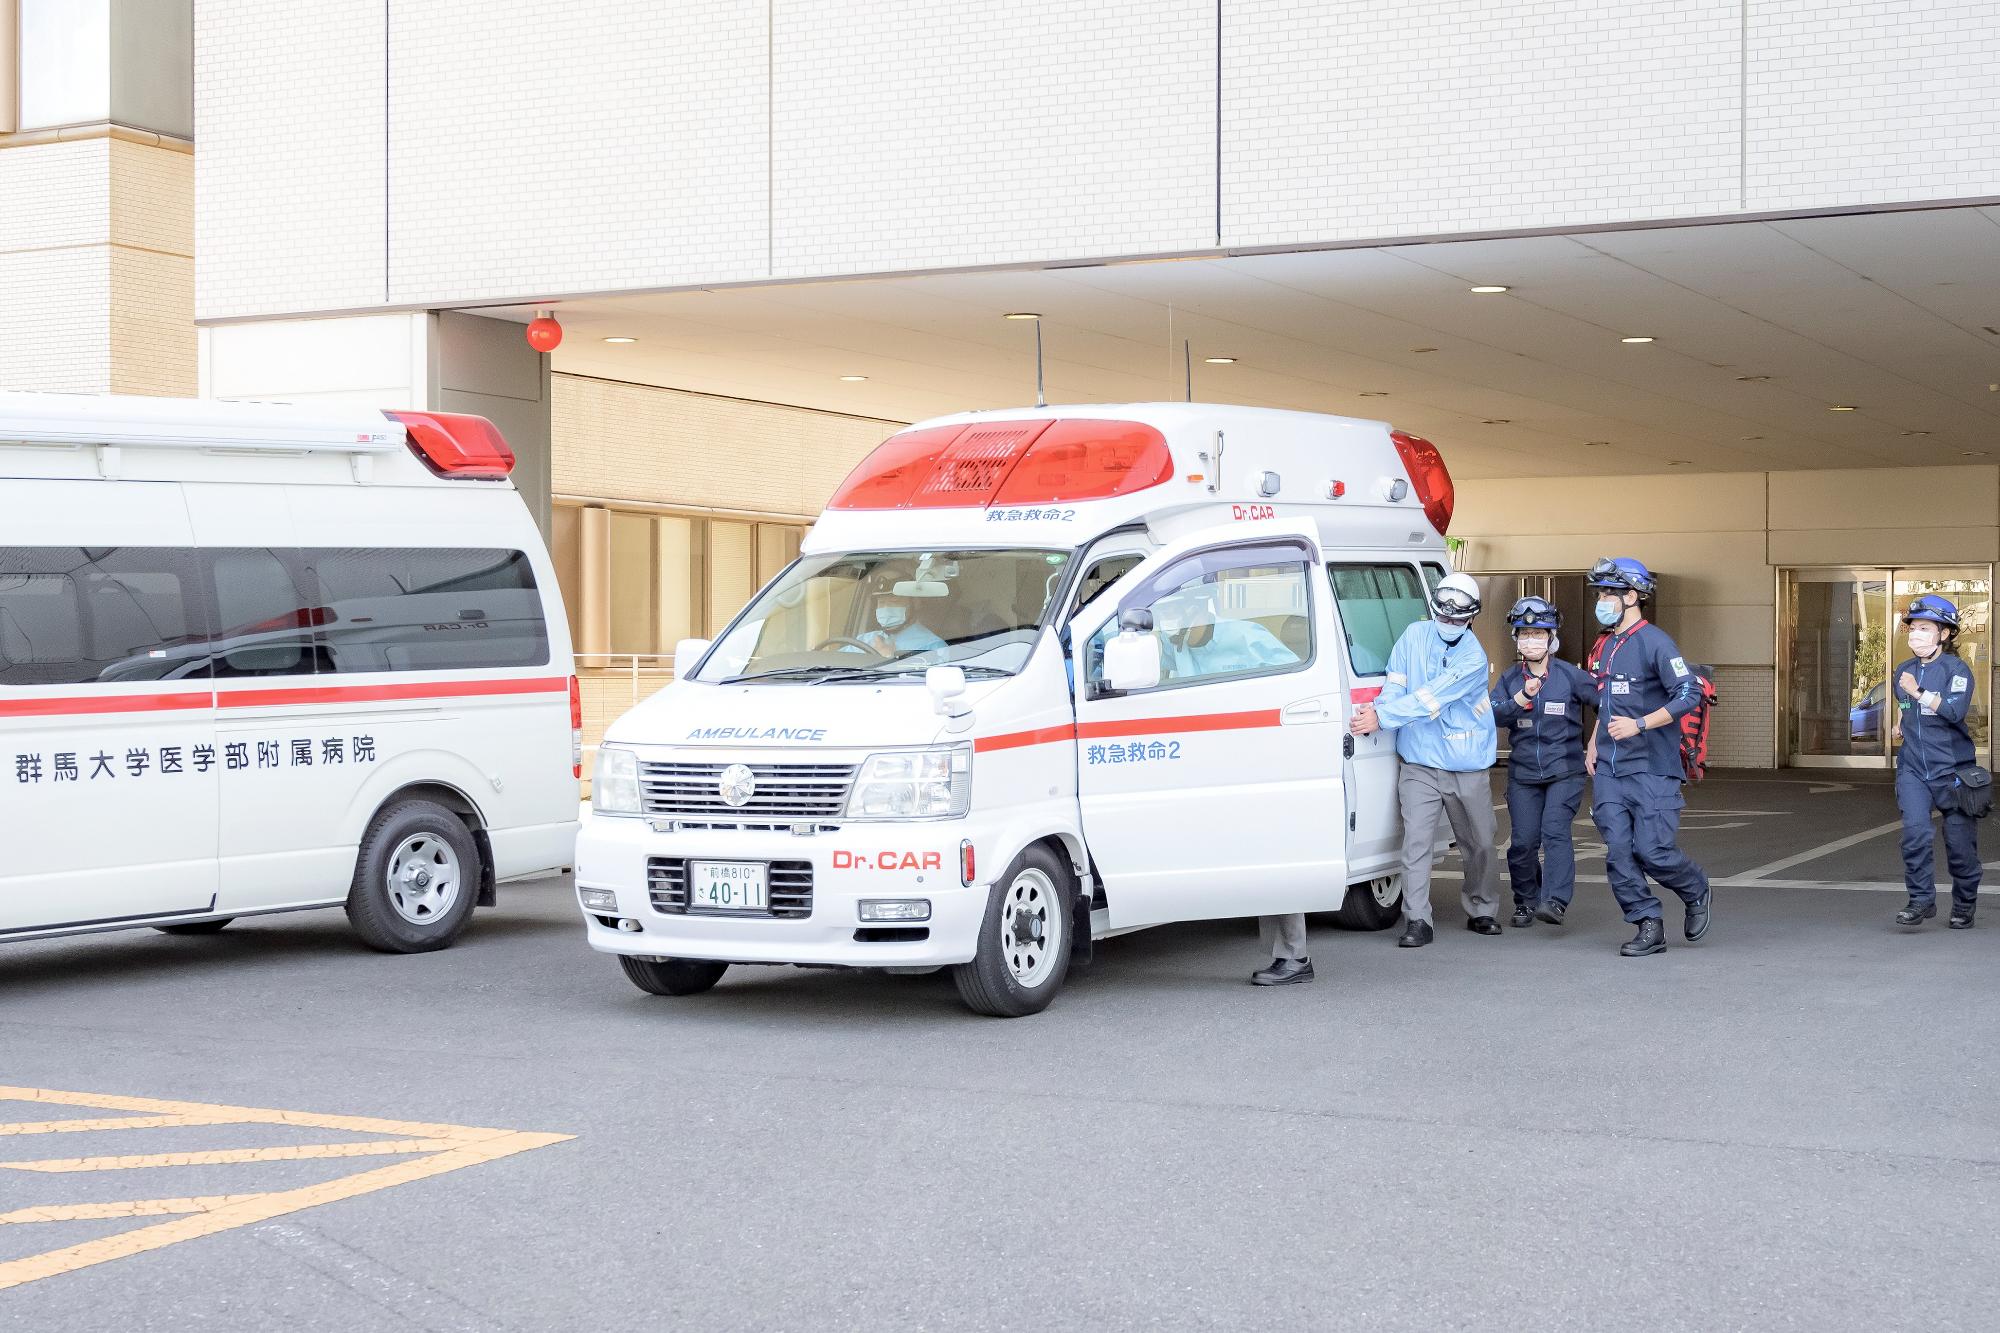 医師、看護師、救急救命士が群馬大学医学部附属病院からドクターカーで出動する様子